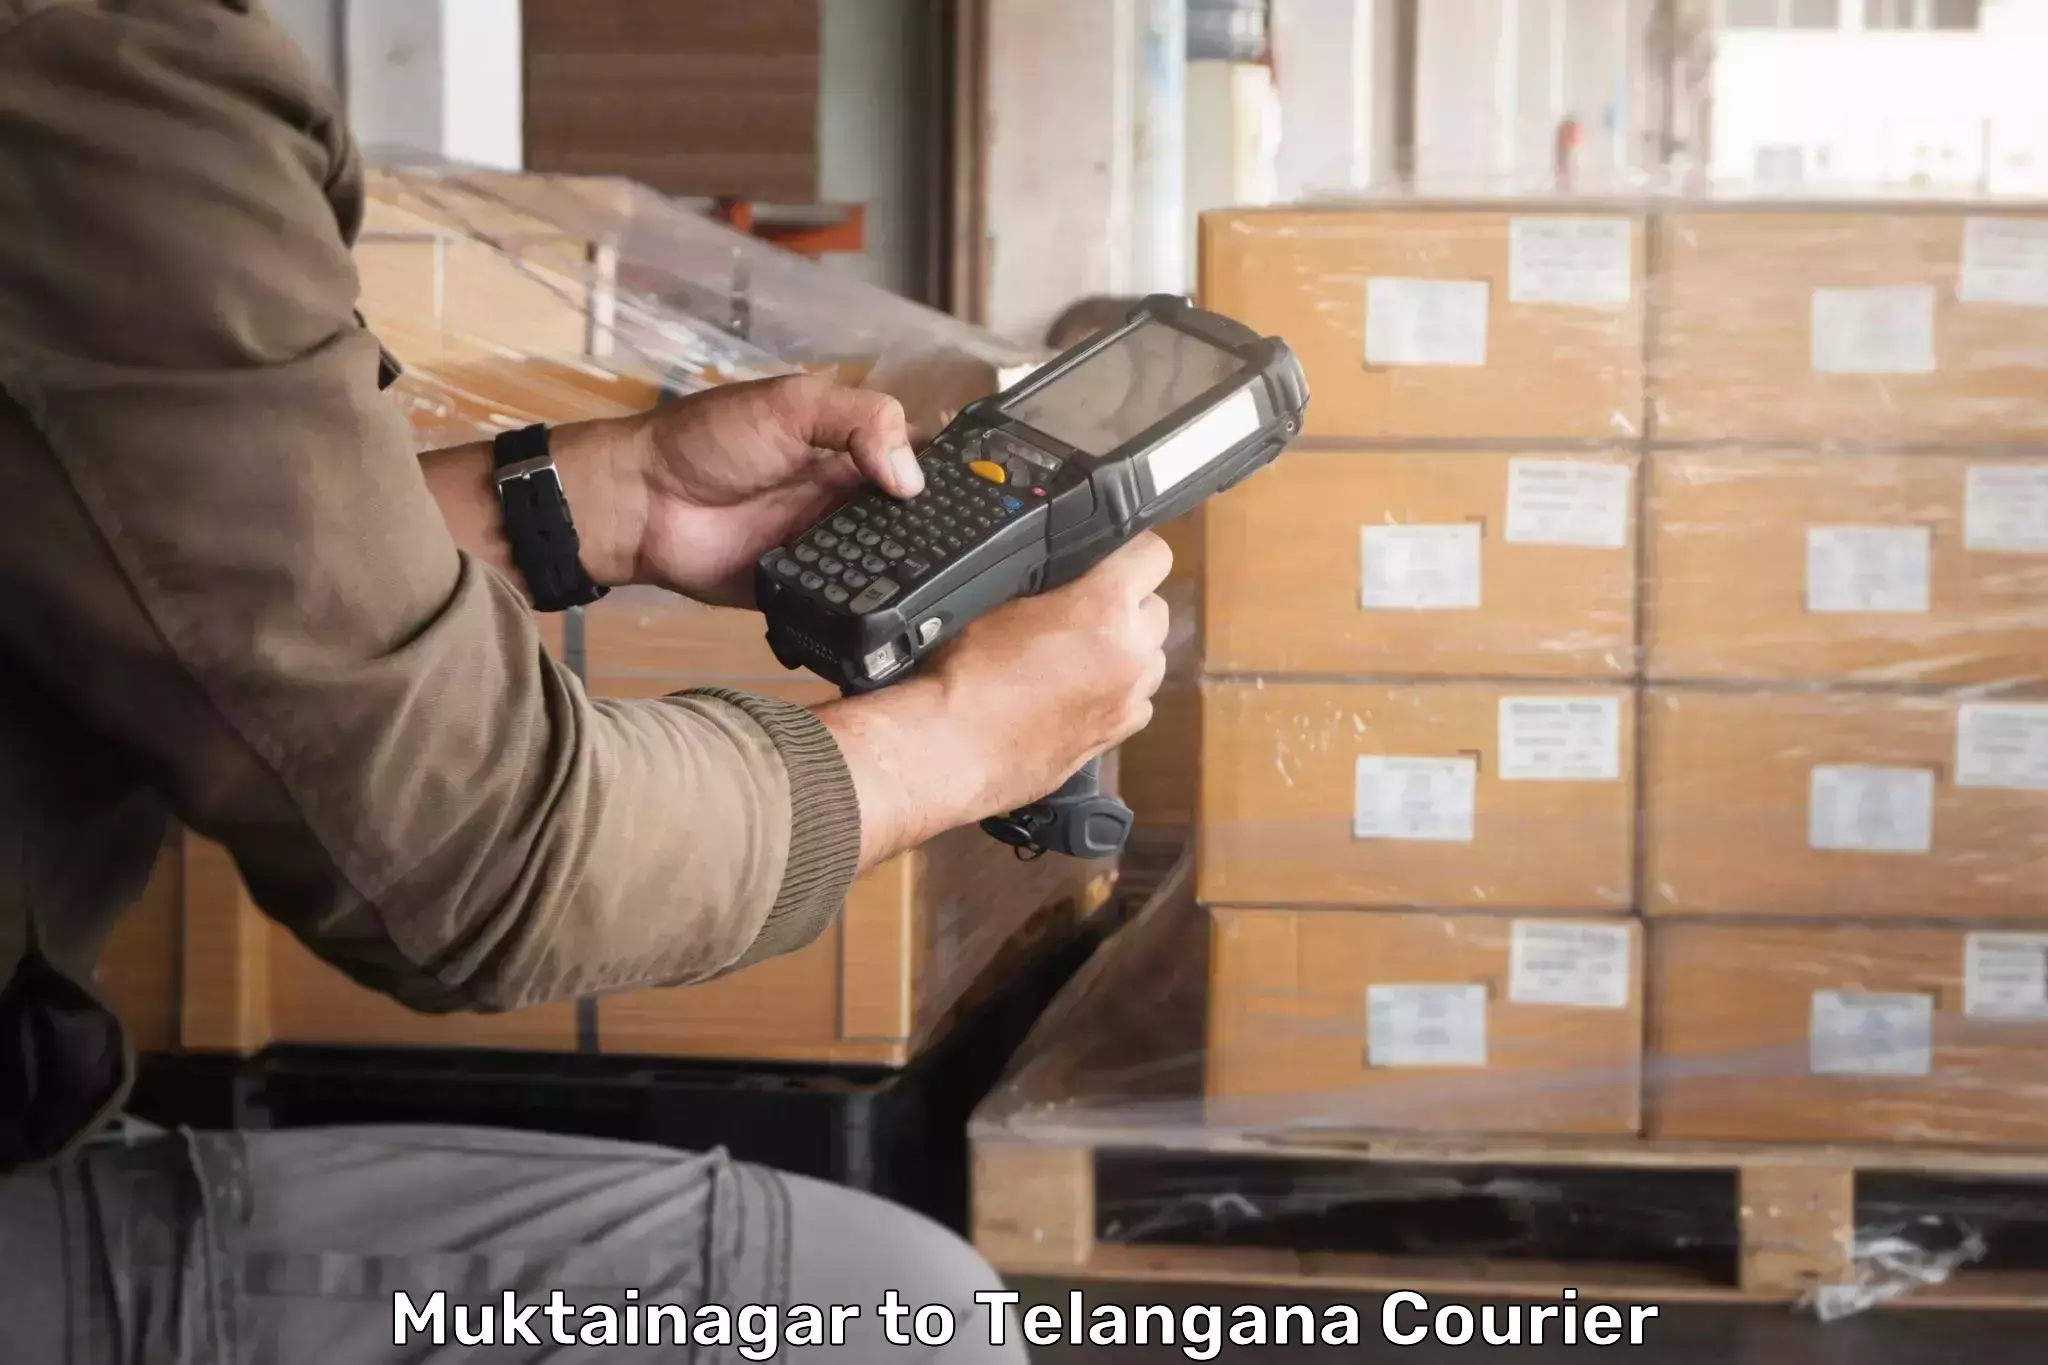 Weekend courier service Muktainagar to Gudur Warangal